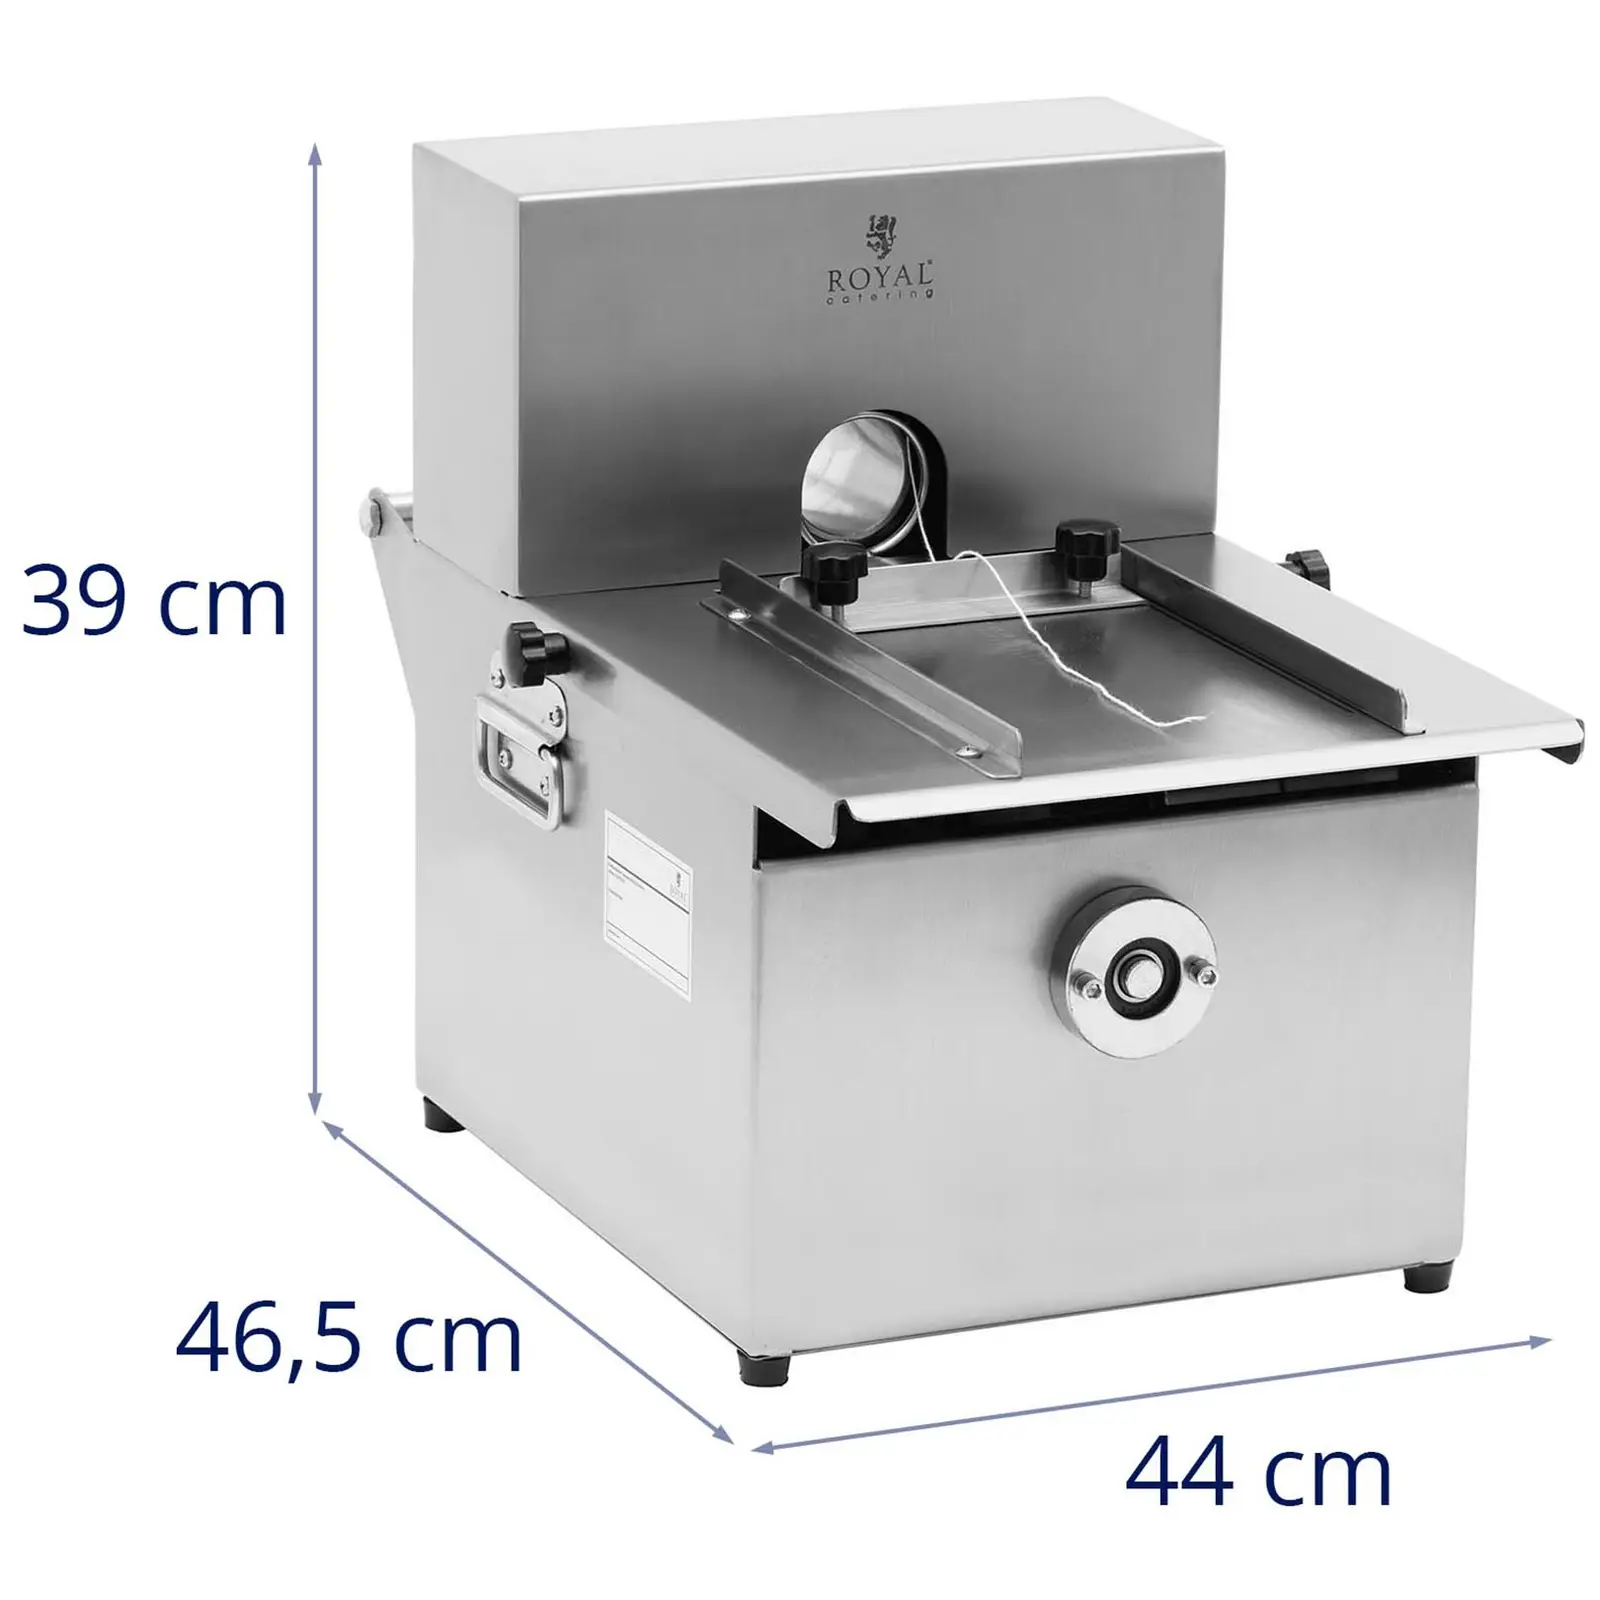 Máquina de atar salsichas - manual - aço inoxidável - 6 carretéis de fio de salsicha - Royal Catering